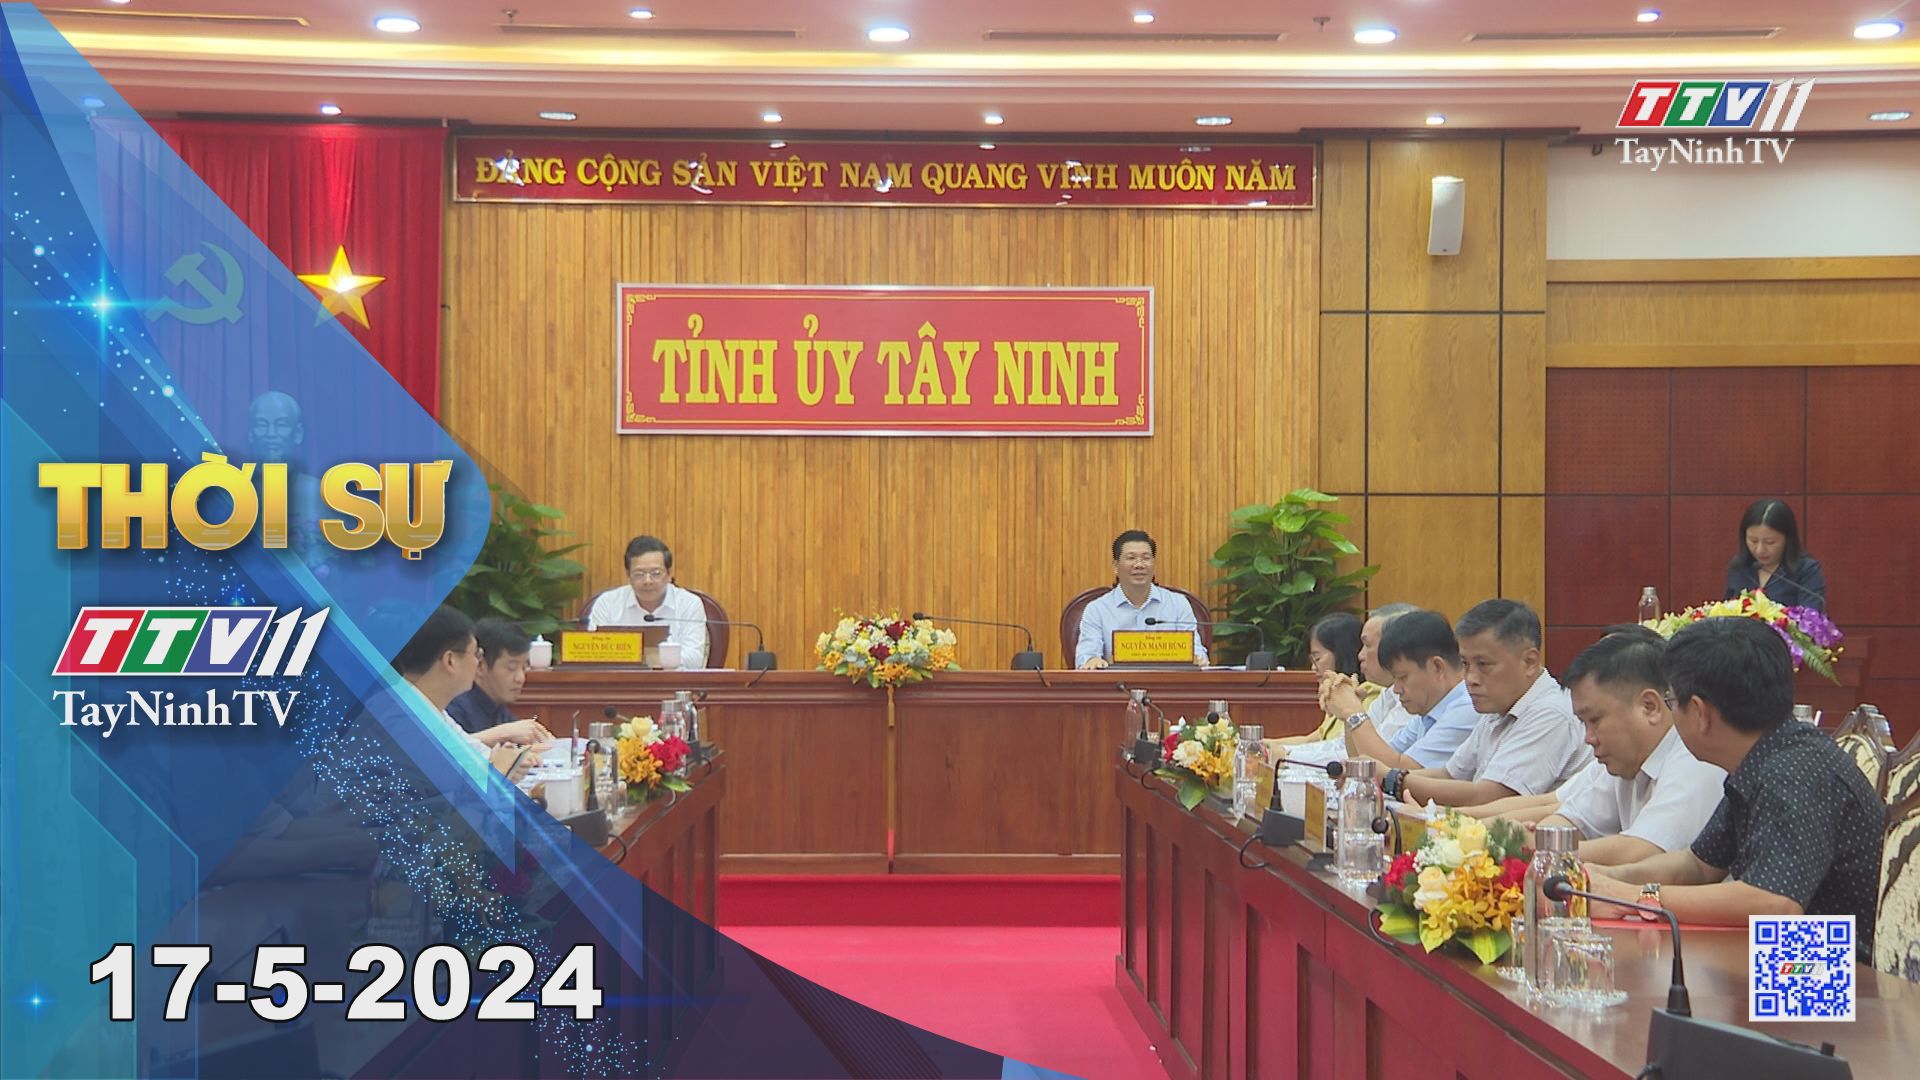 Thời sự Tây Ninh 17-5-2024 | Tin tức hôm nay | TayNinhTV